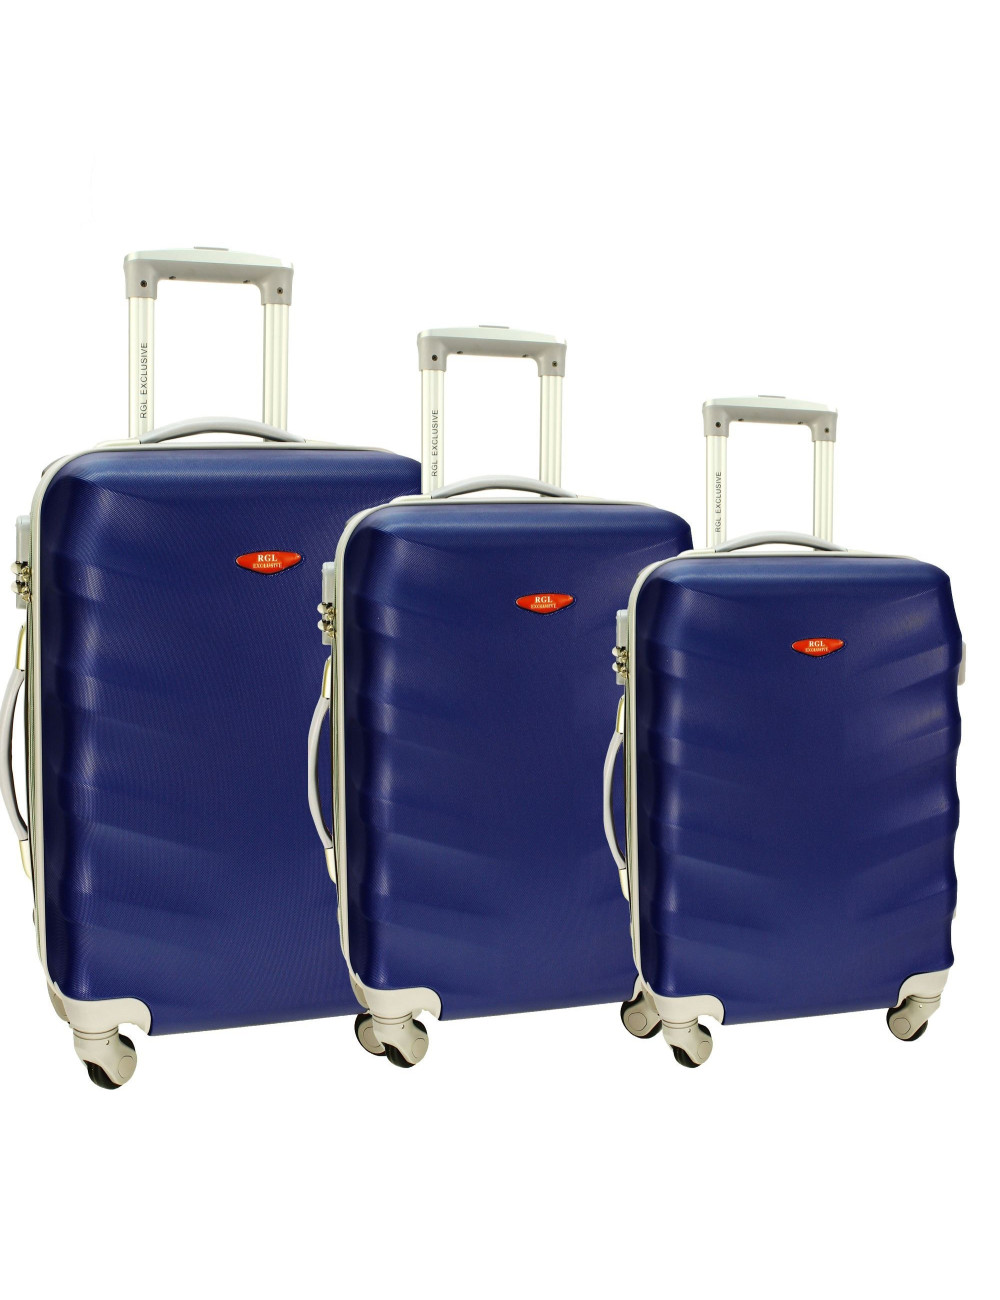 Zestaw walizek podróżnych na kółkach 3w1 81 RGL - granatowy